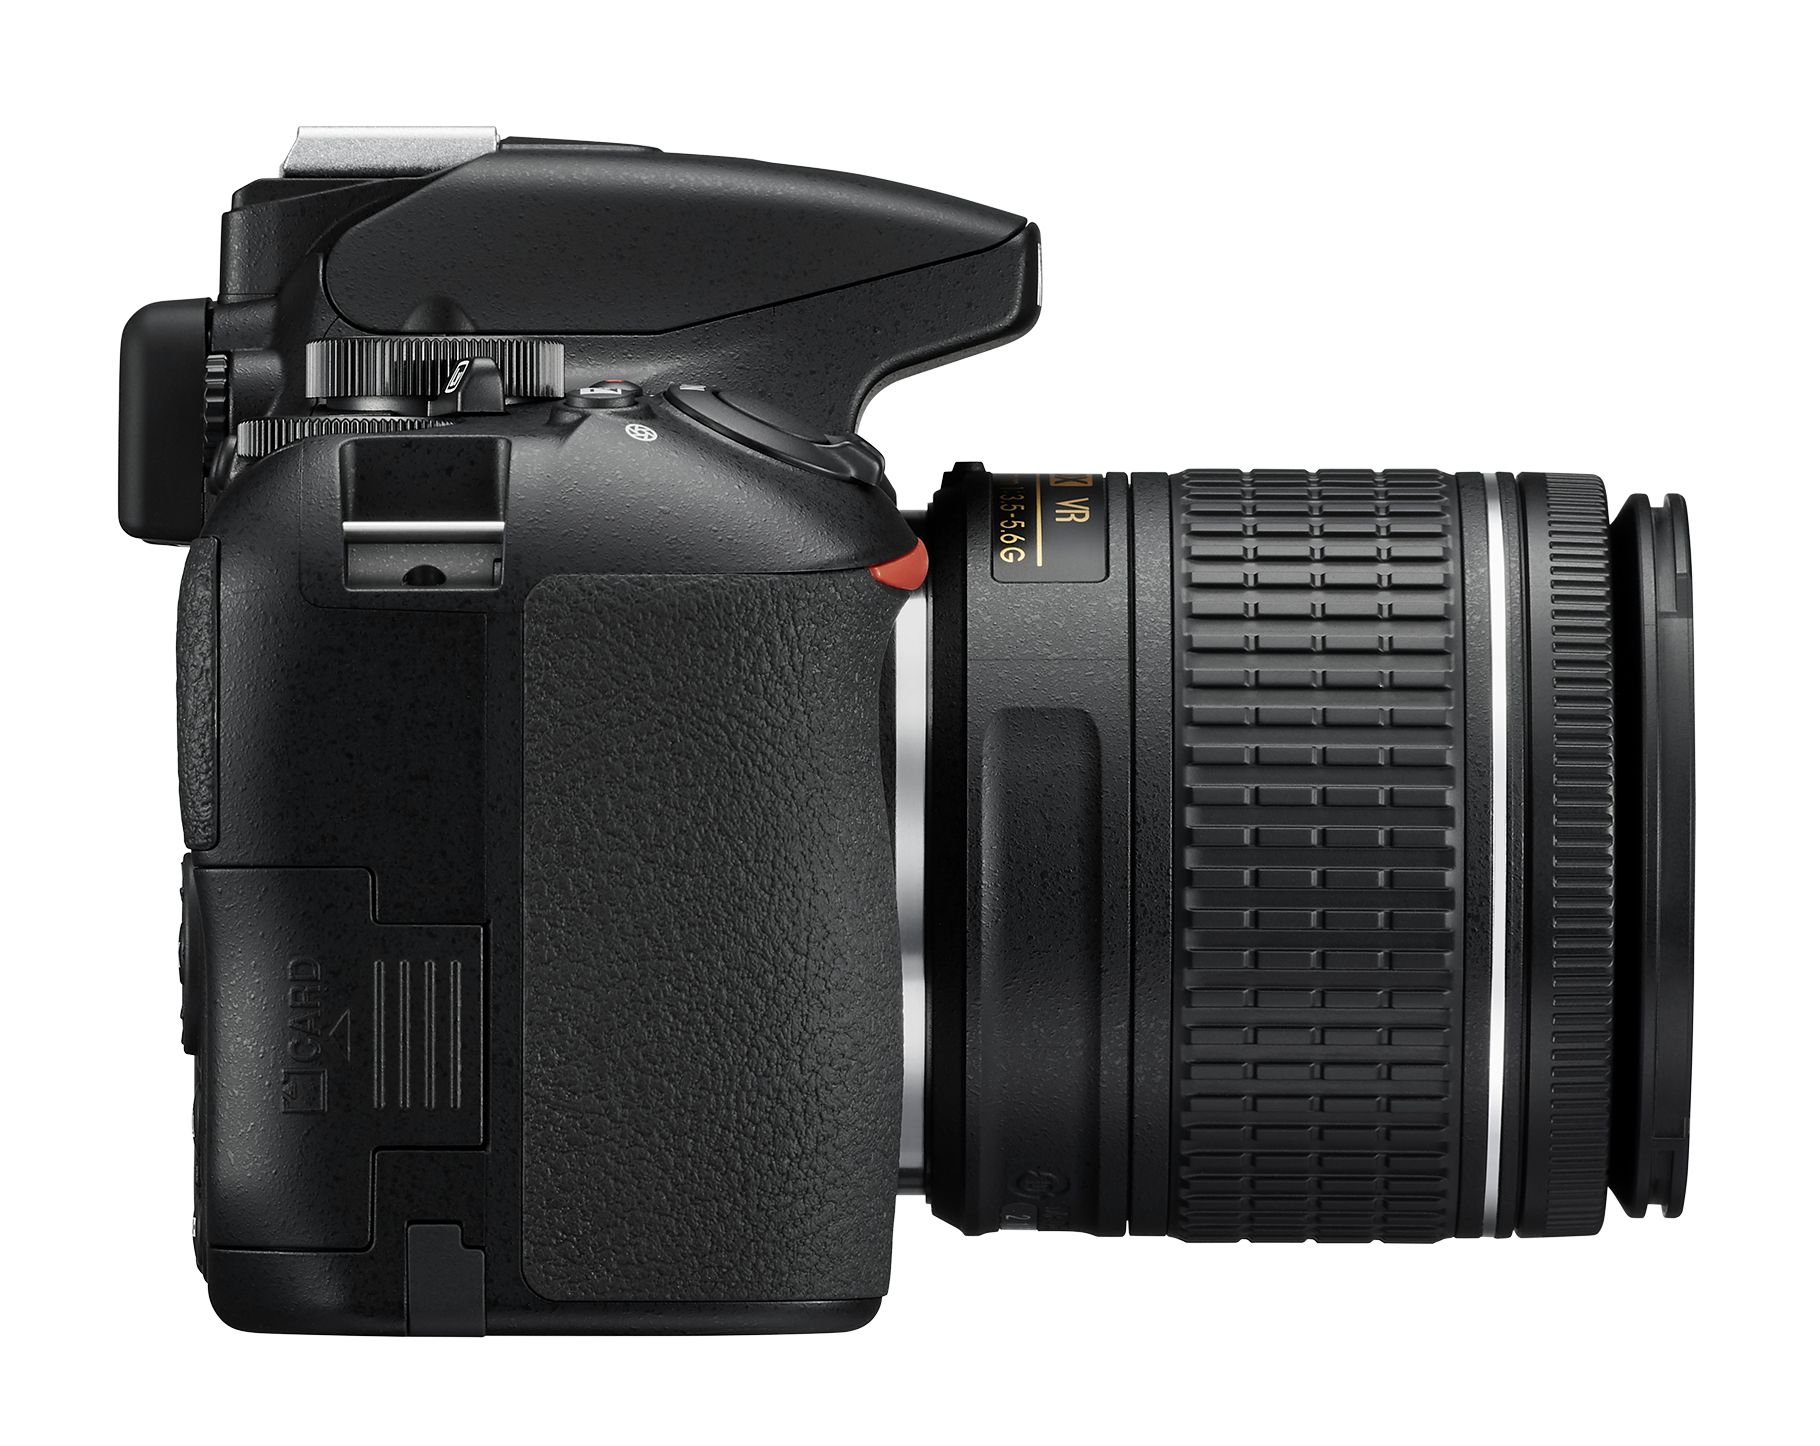 Nikon D3500 + 18-55mm AF-P VR 